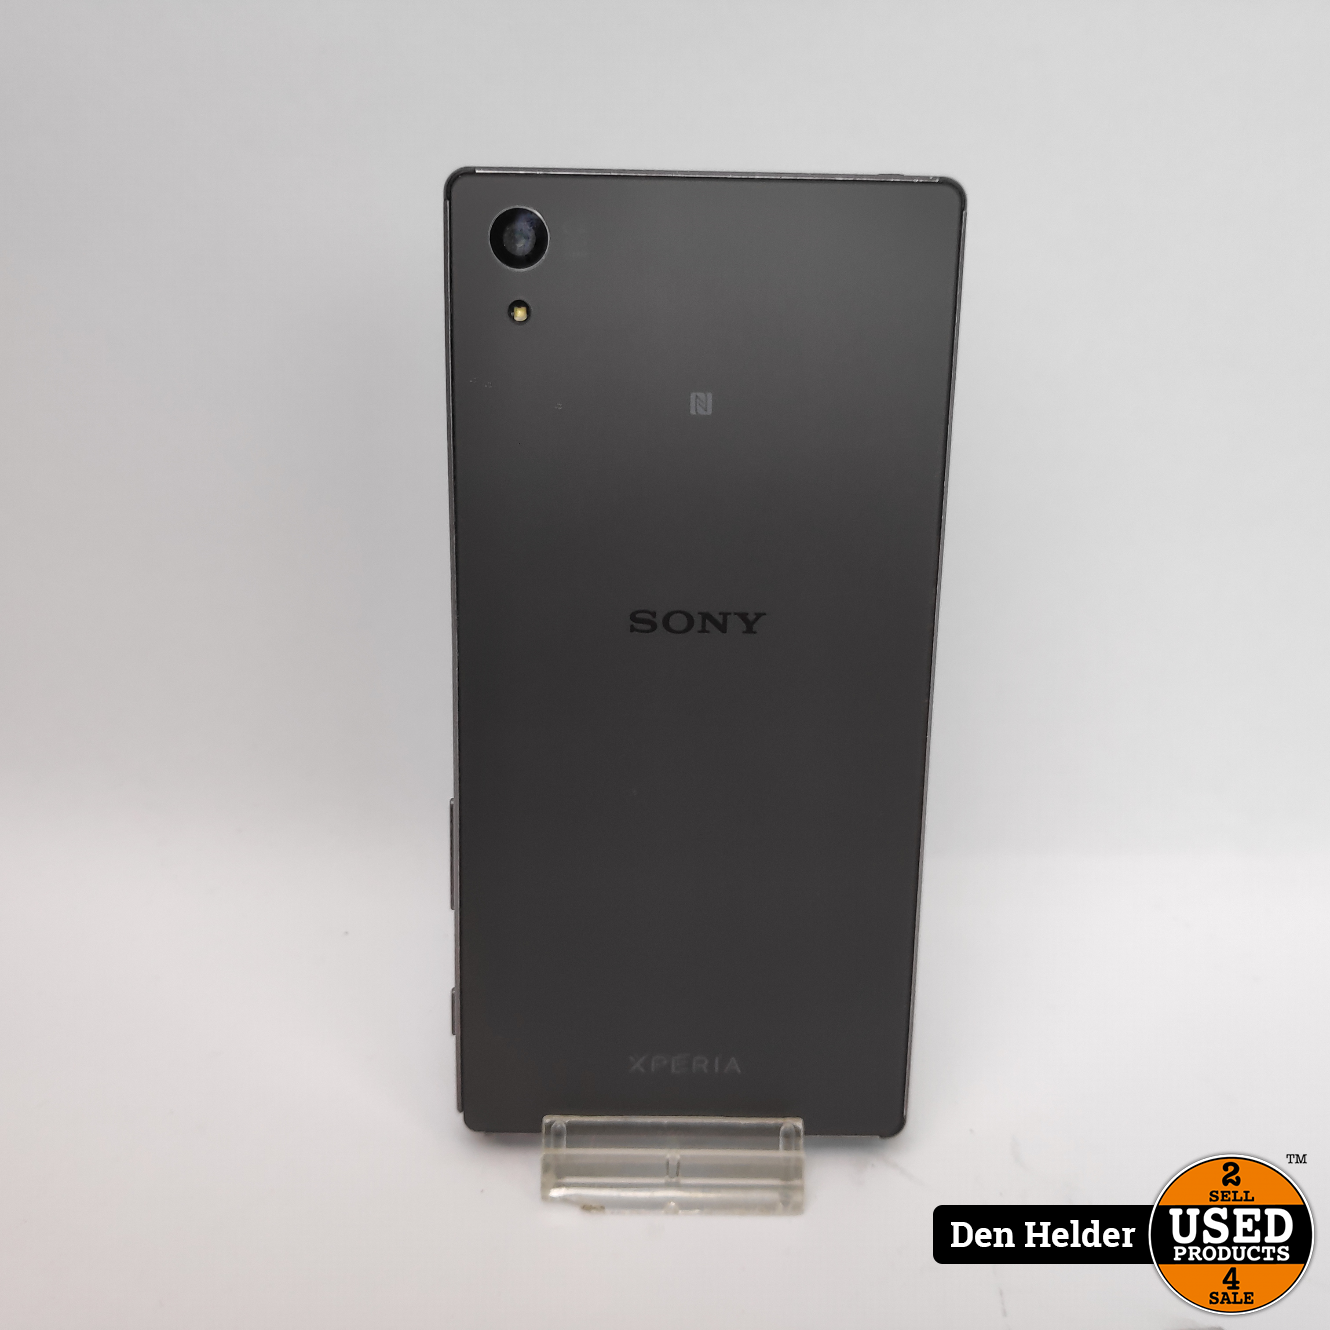 Sony Xperia Z5 32GB Grijs - In Prima Staat - Products Den Helder